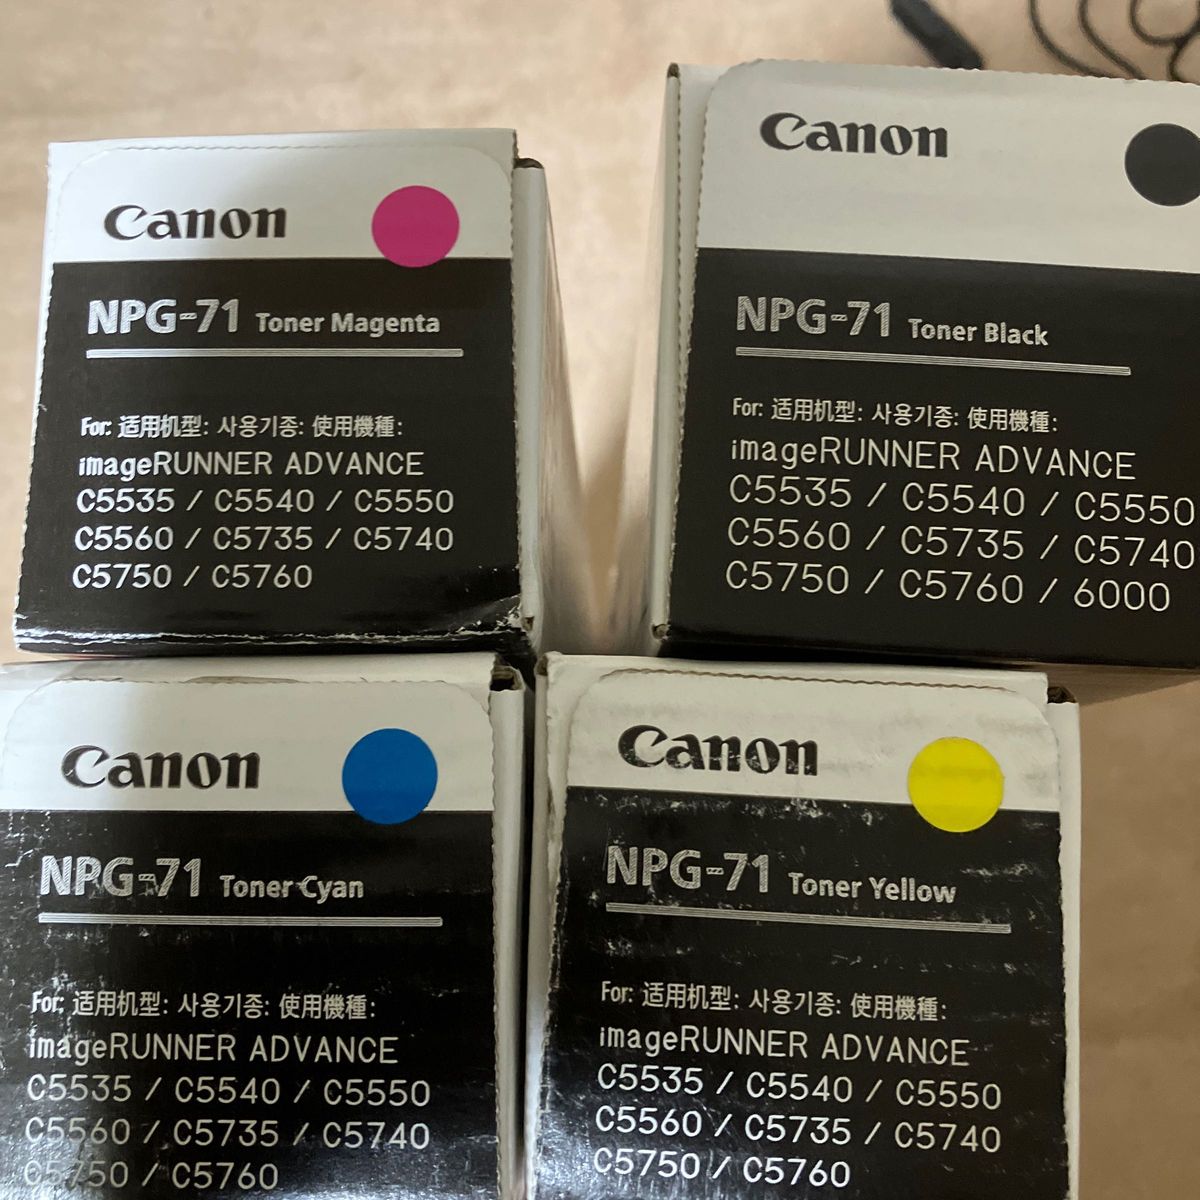 キヤノン CANON NPG-71トナー/NPG71 4色/ブラック/シアン/マゼンタ 